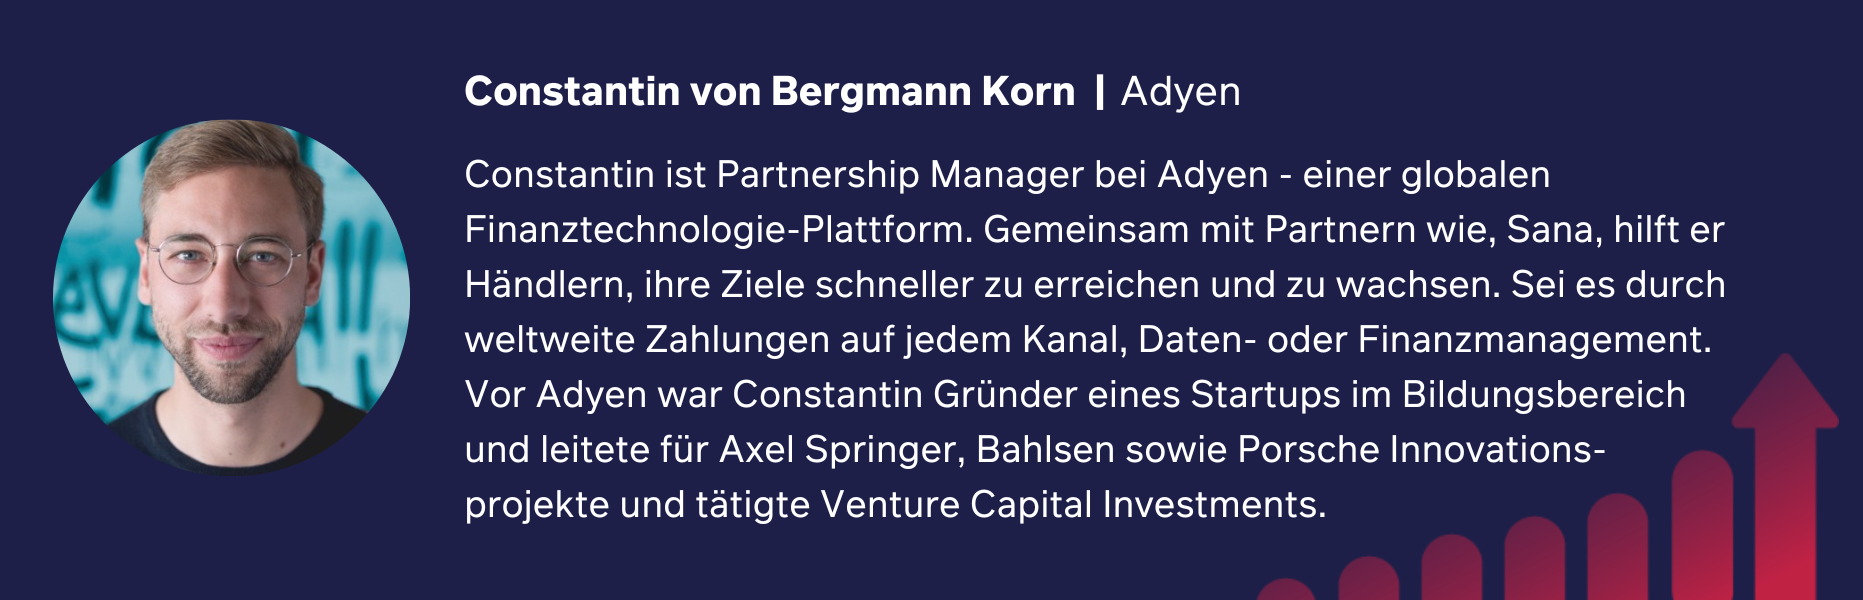 Constantin von Bergmann Korn Adyen Level up Speaker